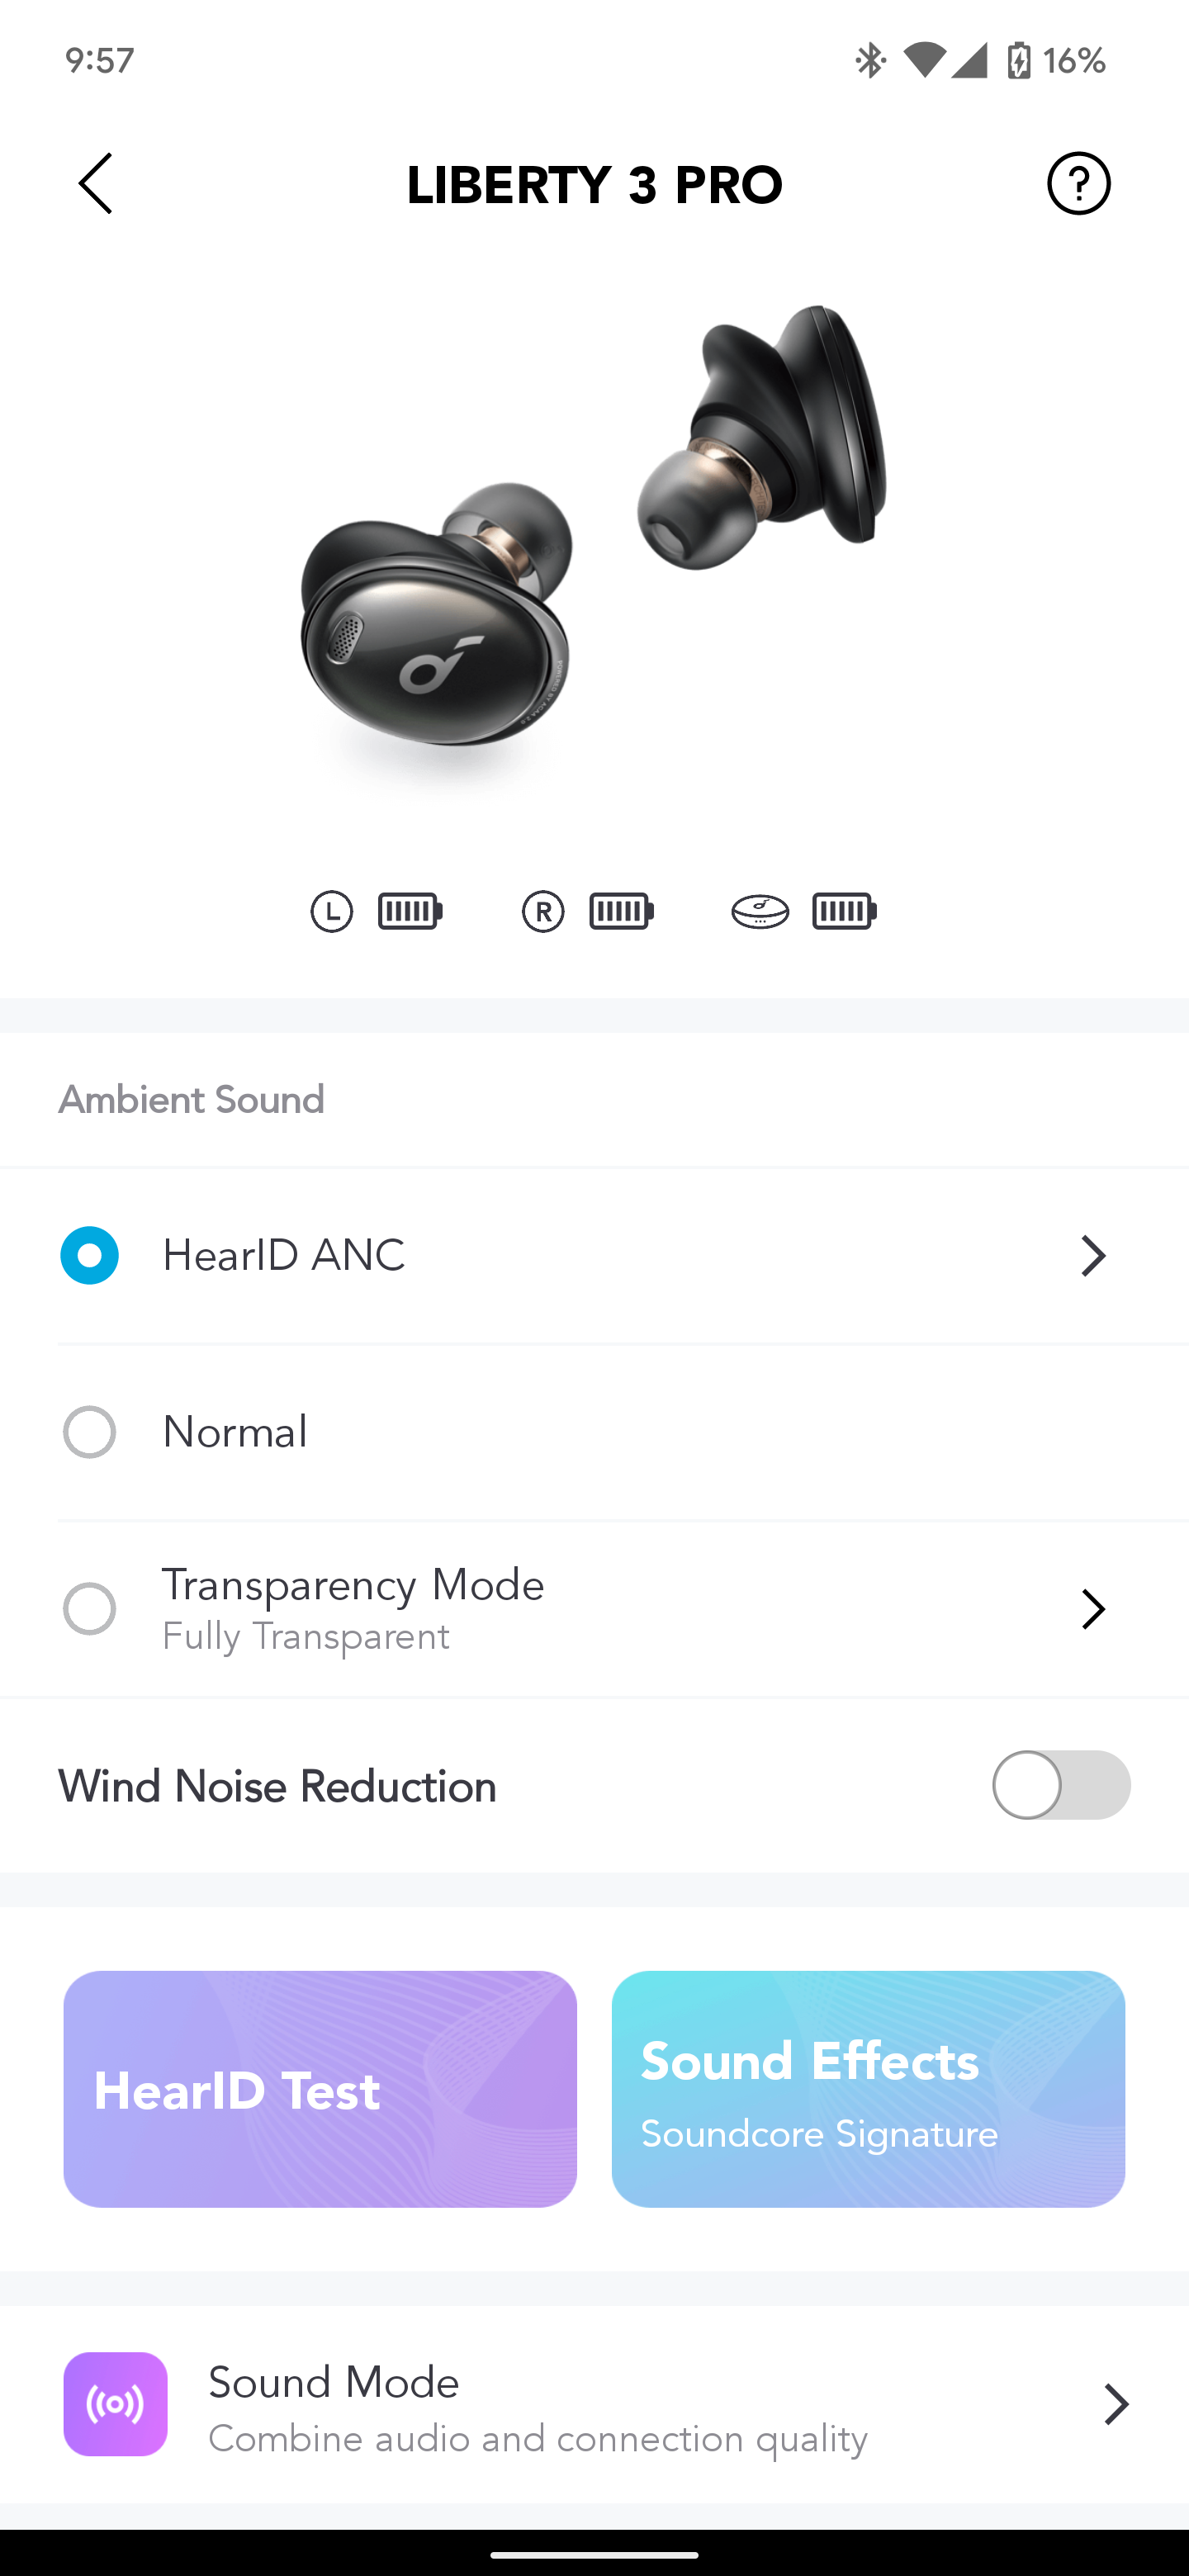 soundcore-app-1